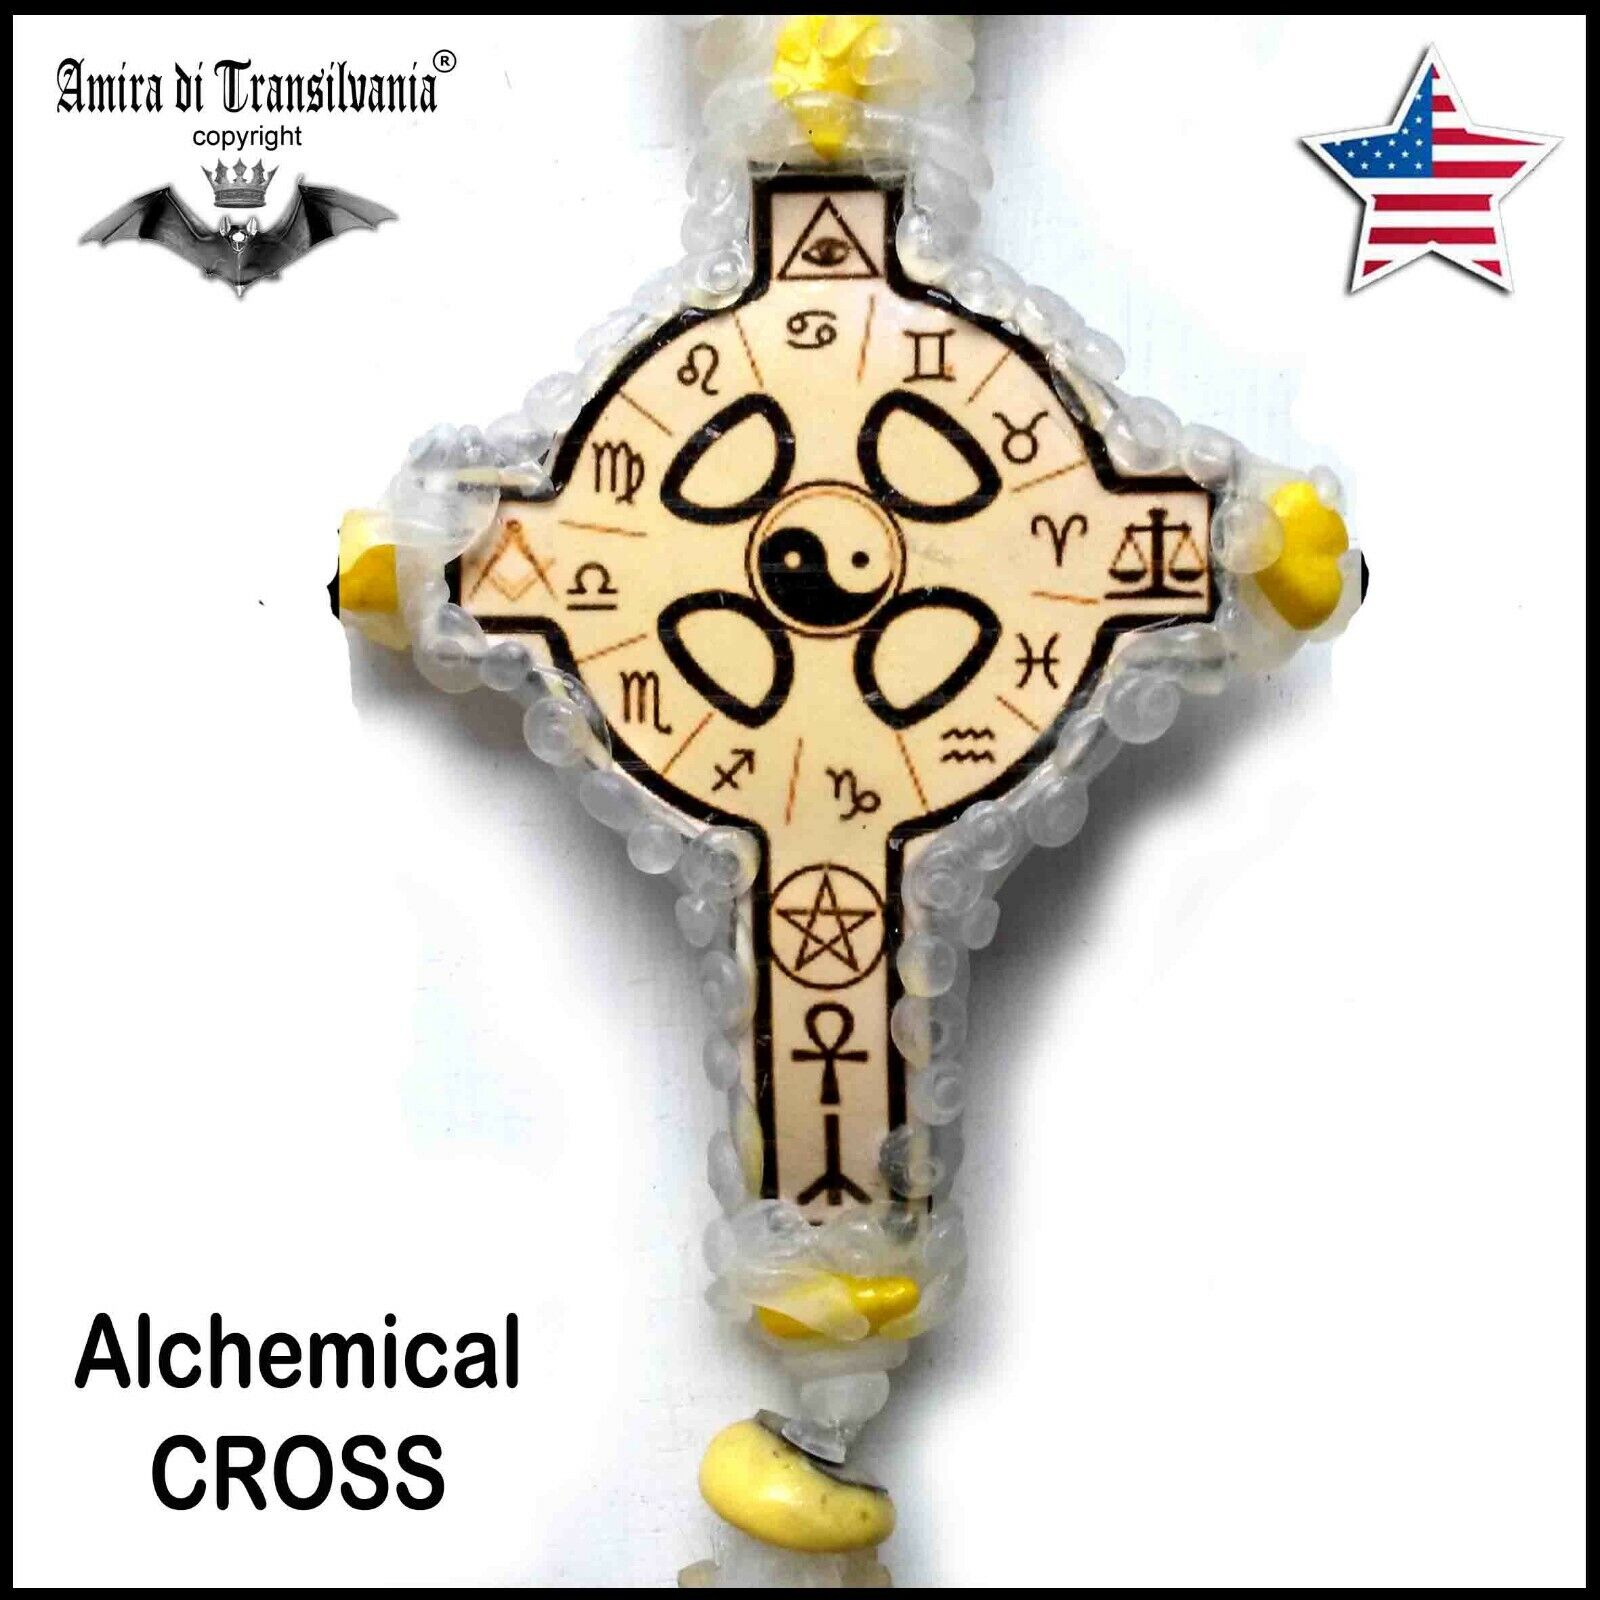 Cross alchemy gothic wicca magic power talisman rosicrucian occult pagan symbol